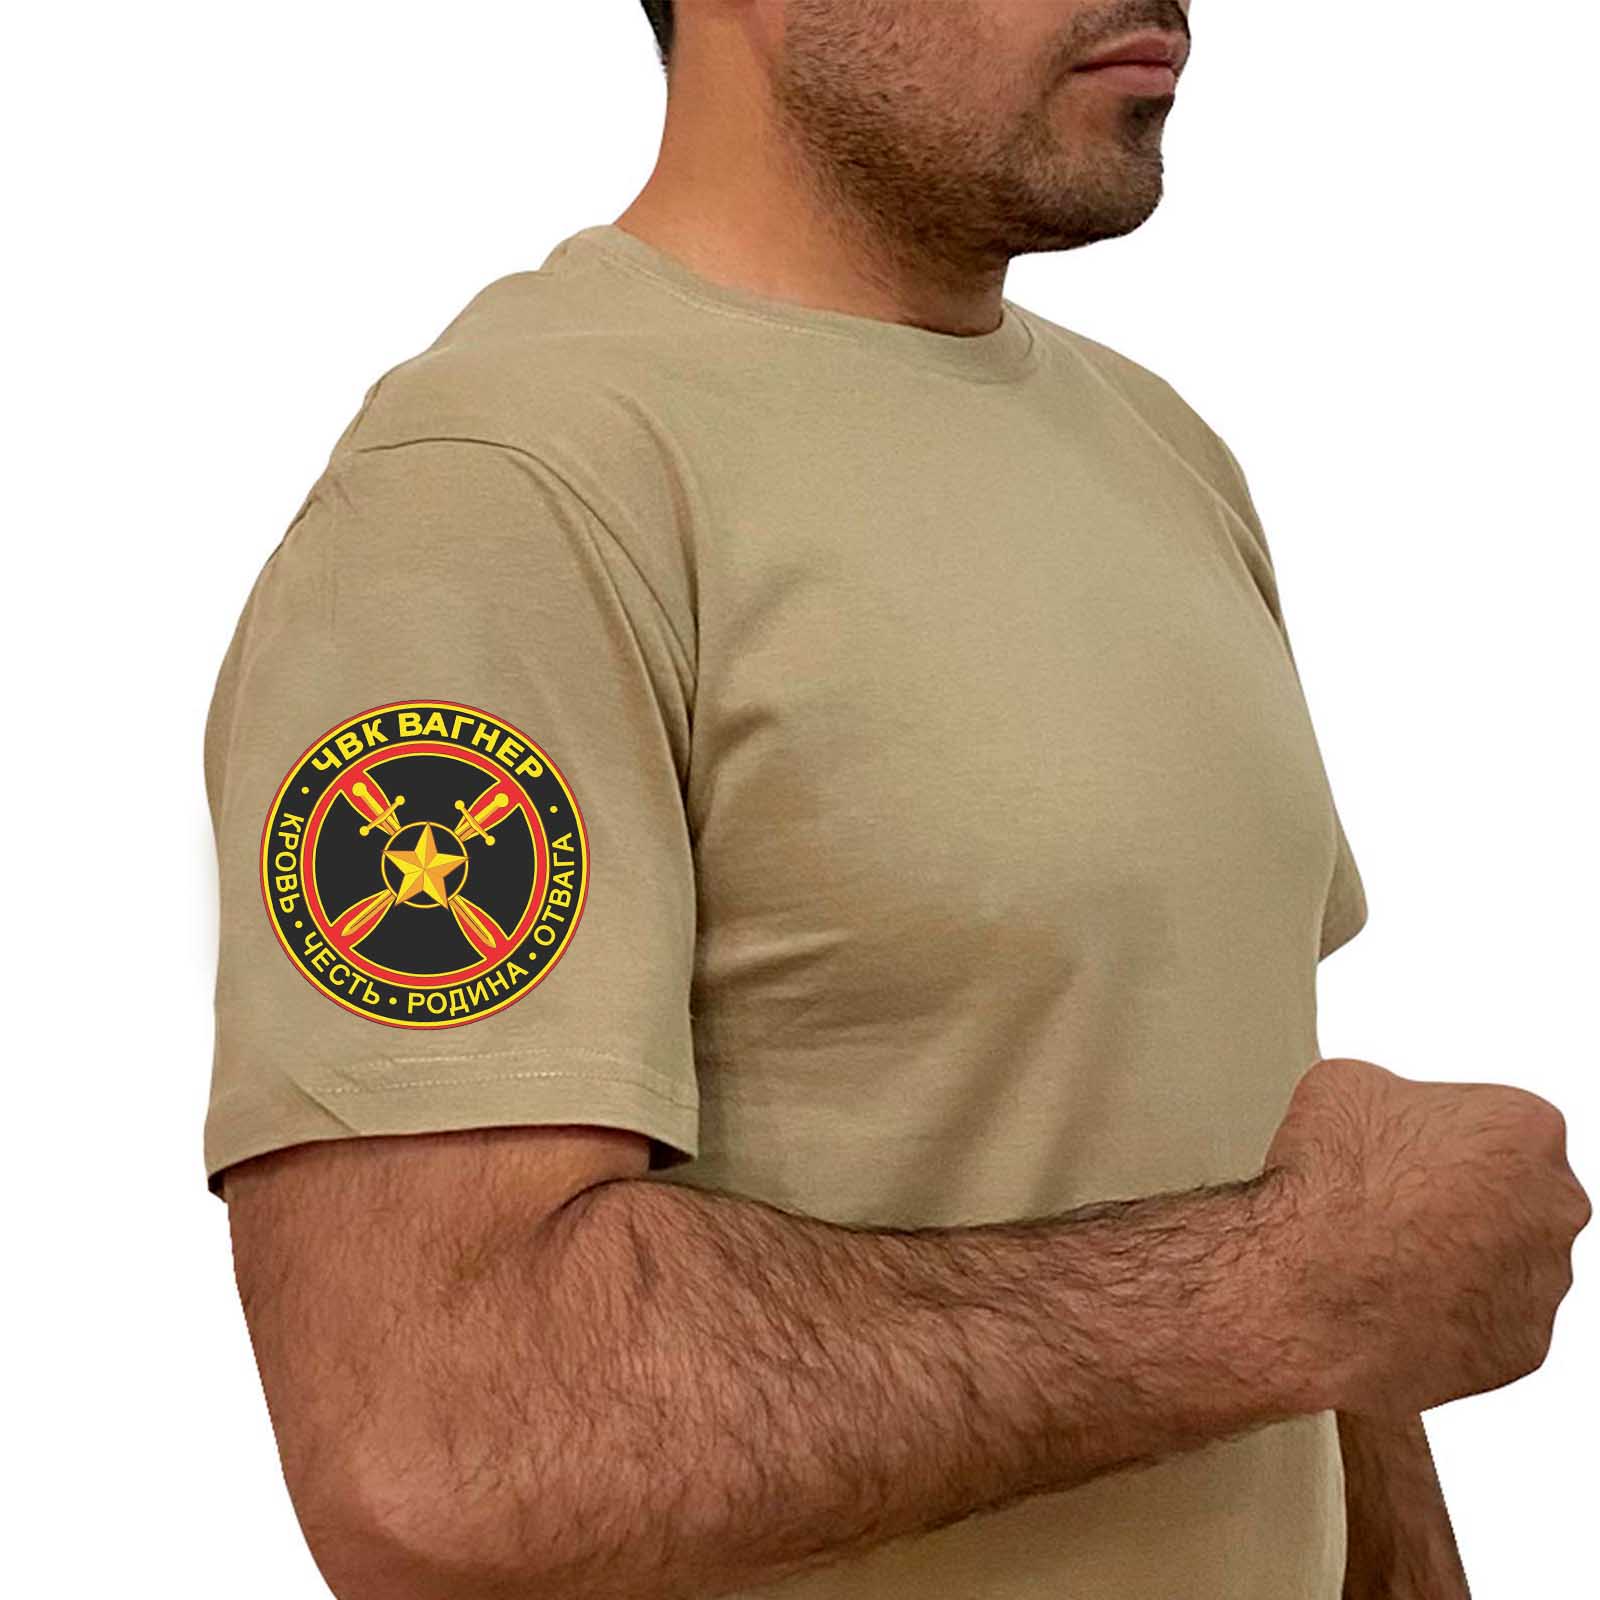 Купить мужскую песочную футболку с термонаклейкой ЧВК Вагнер выгодно